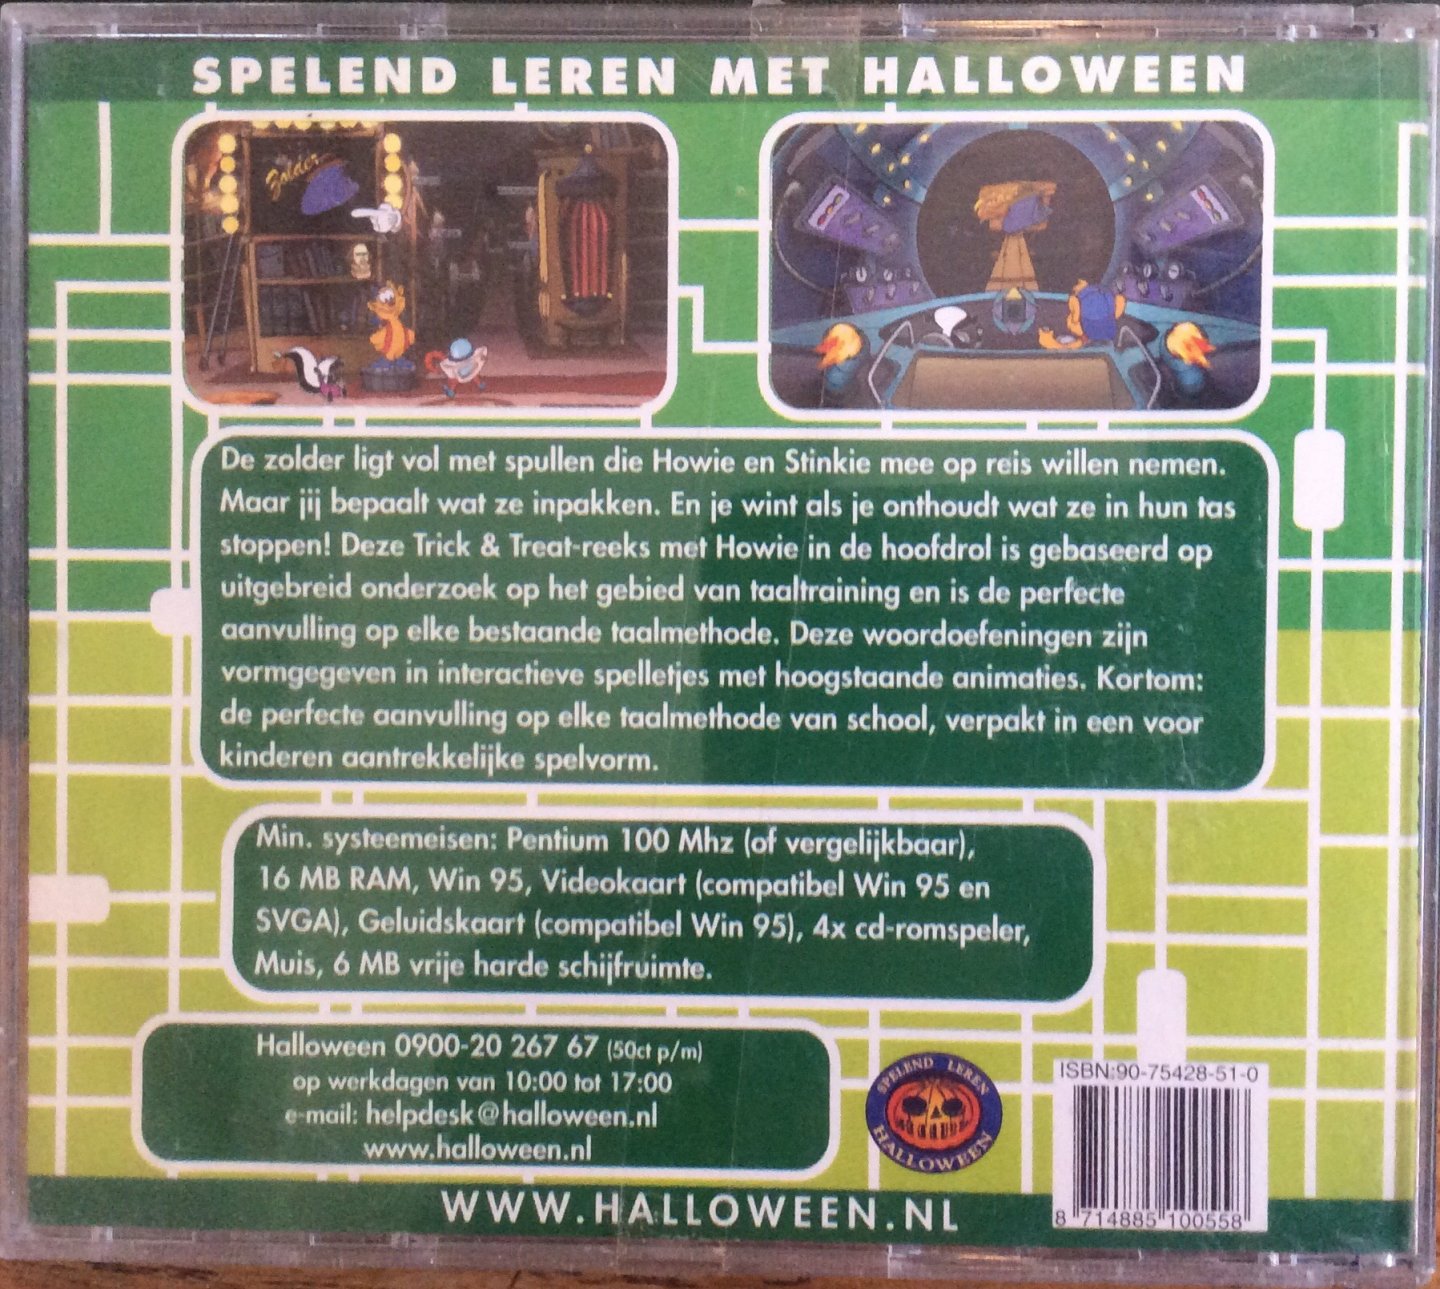 Halloween.nl - De Zolder. Spelend leren met Halloween